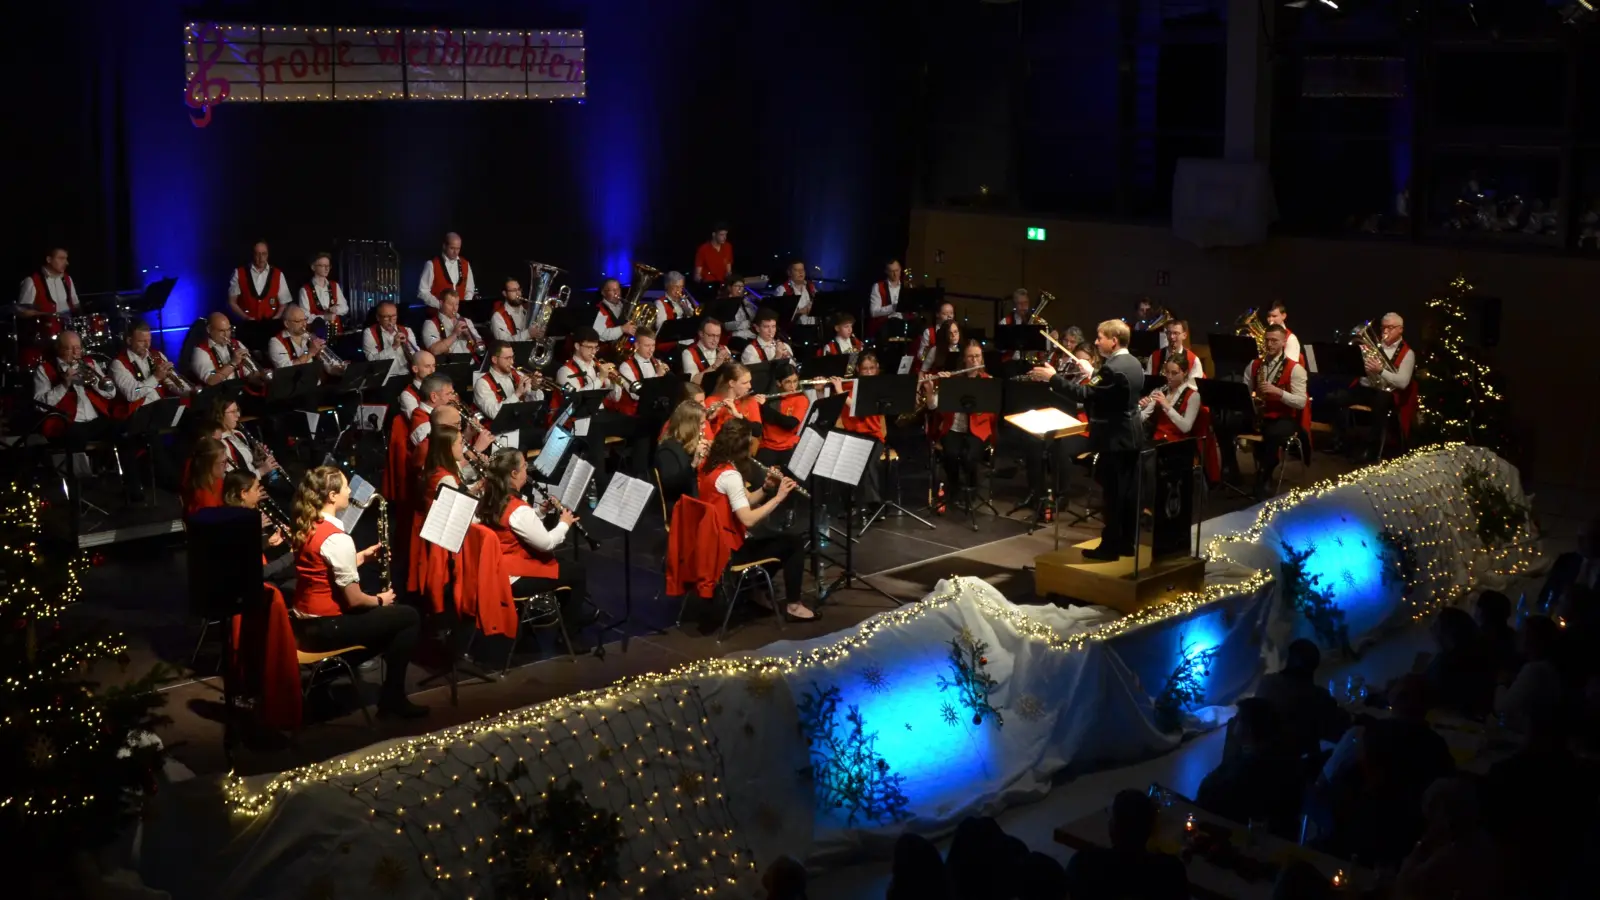 Vor voll besetzten Reihen hat der 1. Europa-Musikzug Dietenhofen einen Tag vor dem Heiligen Abend sein Weihnachtskonzert gespielt, dessen Programm diesmal noch festlicher ausfiel als gewohnt. (Foto: Yvonne Neckermann)